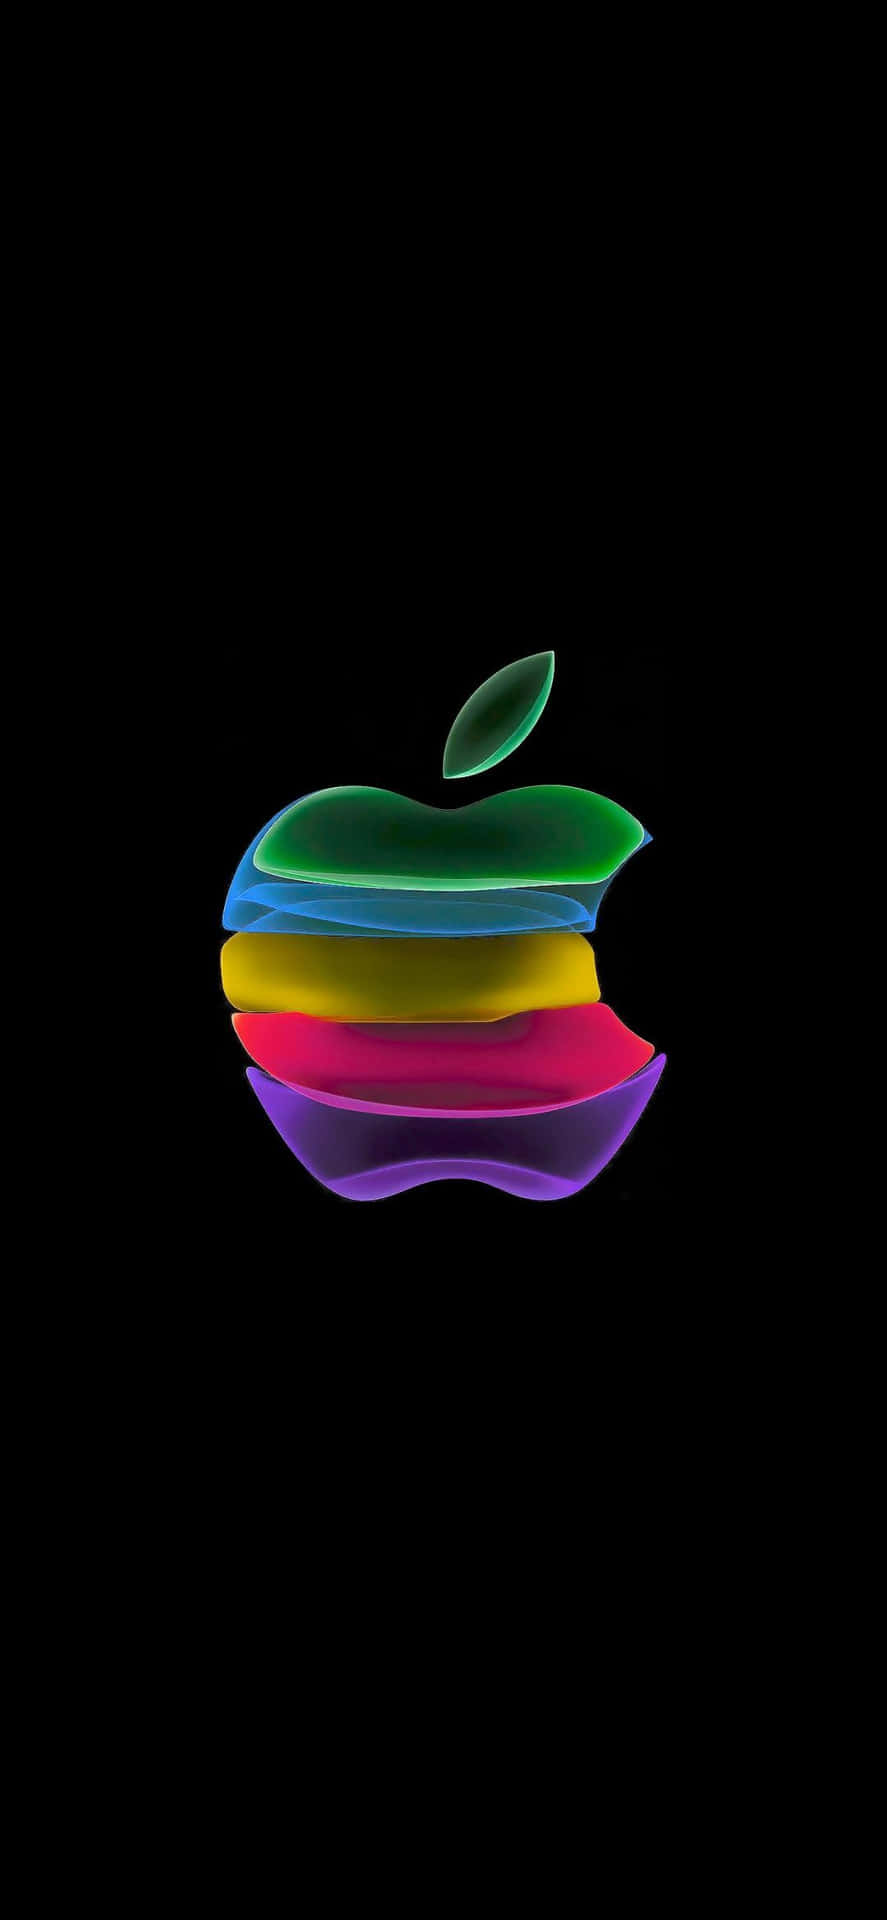 Logotipodel Arcoíris Increíble Hd De Apple Para Iphone. Fondo de pantalla